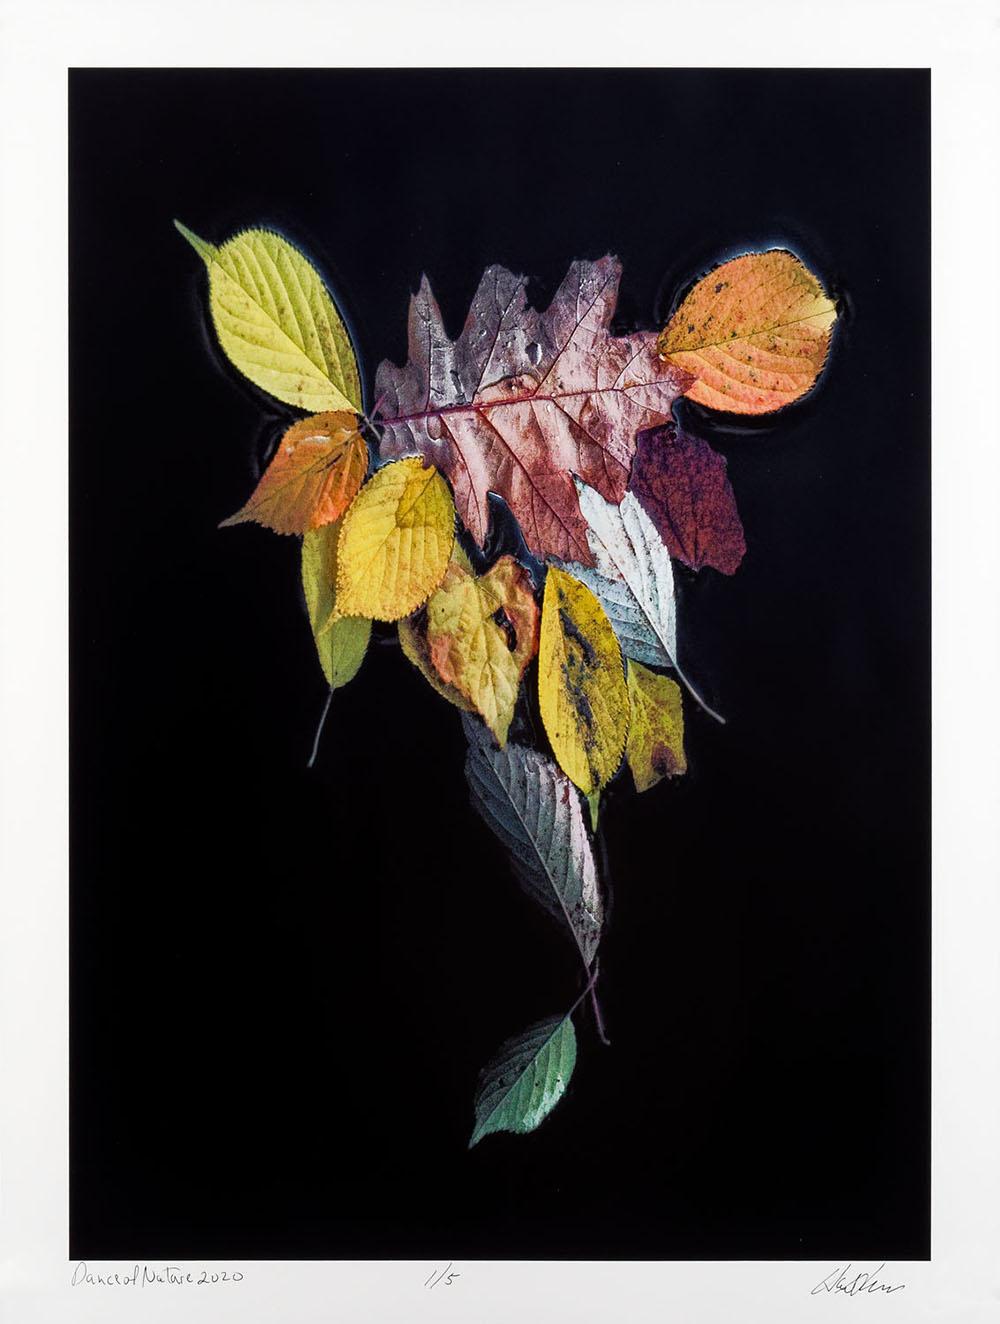 Still-Life Photograph Hank Gans - La danse de la nature, photographie contemporaine en couleur, édition limitée 